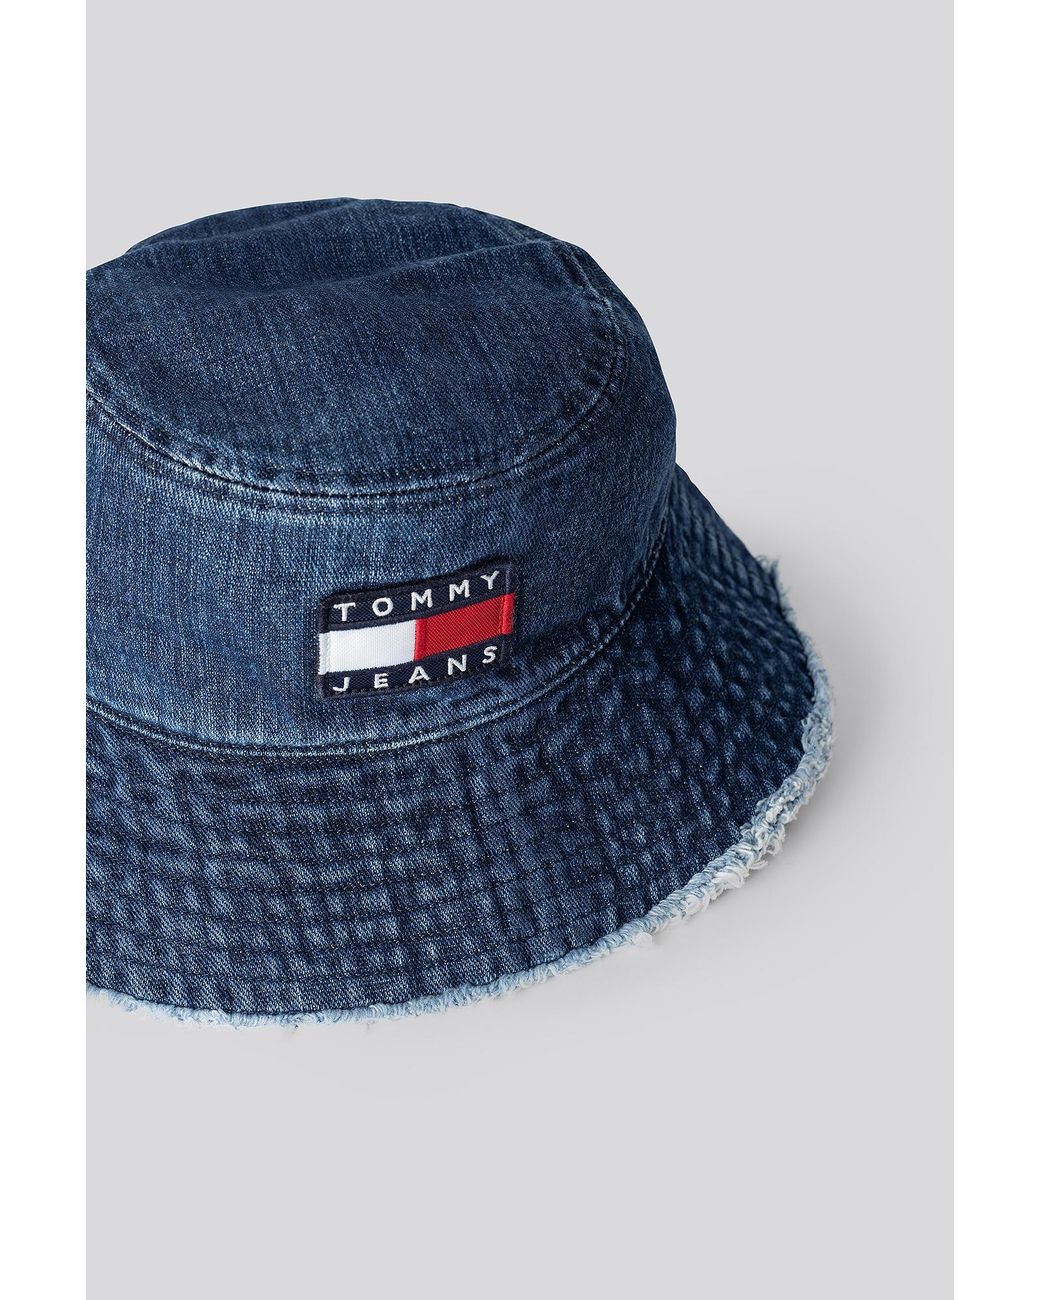 Tommy Hilfiger Blue Heritage Denim Bucket Hat | Lyst